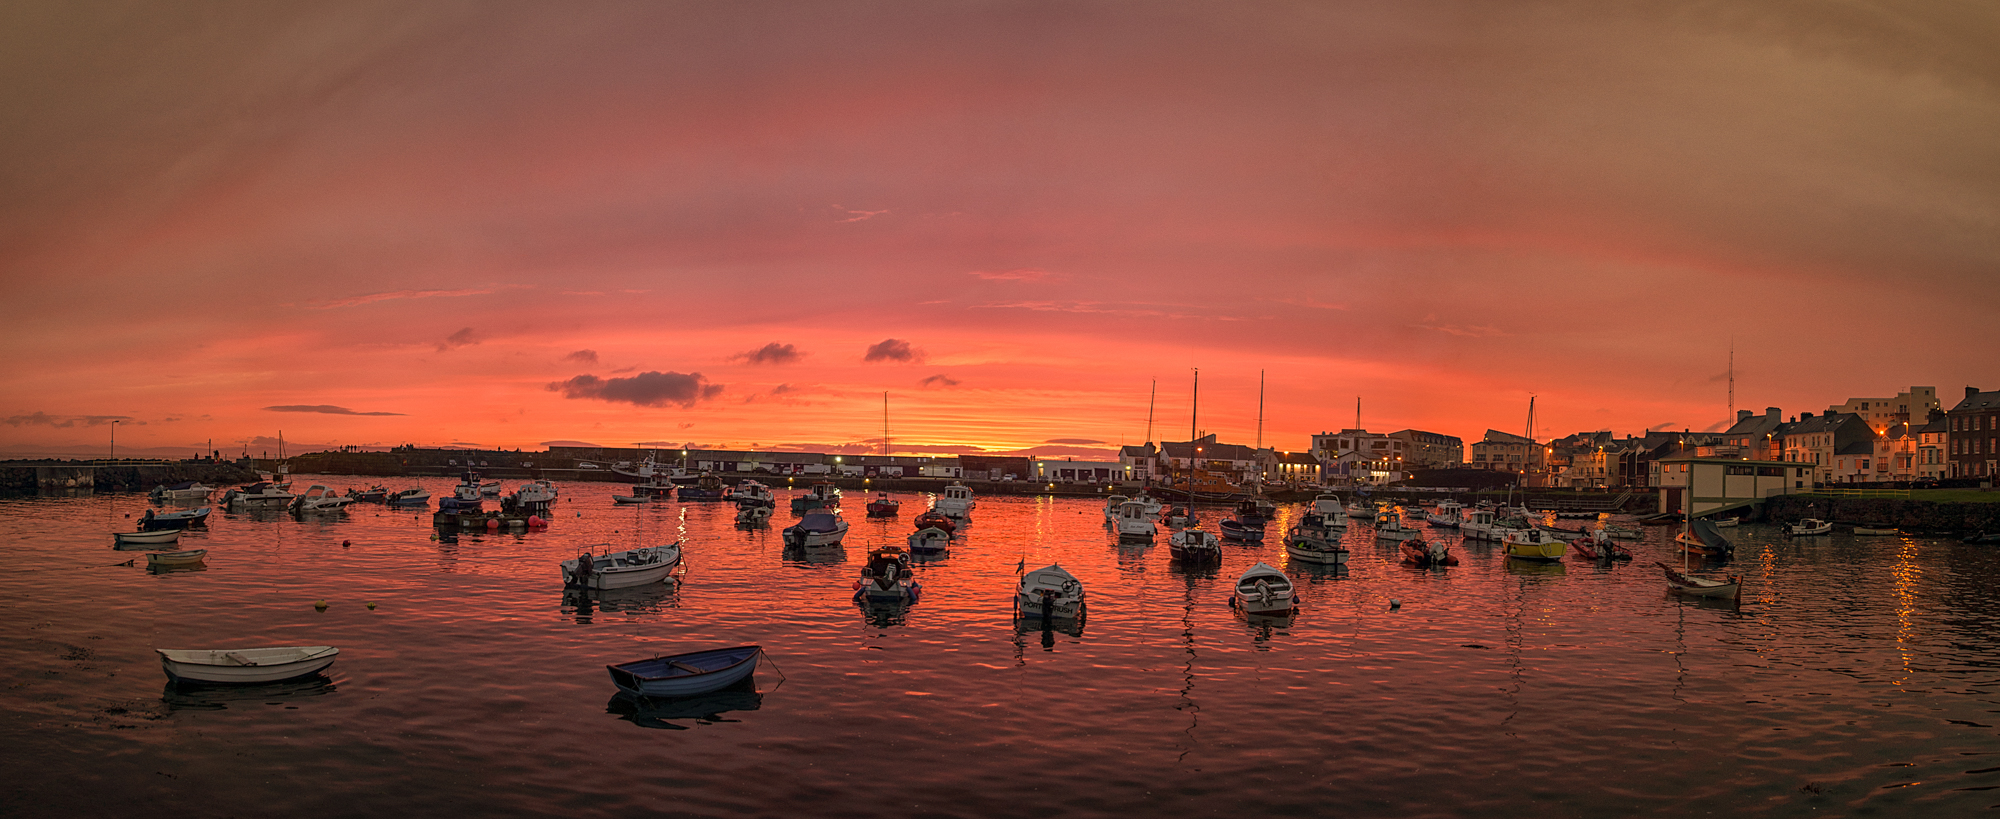 20120723-Portrush harbour-sunset.jpg